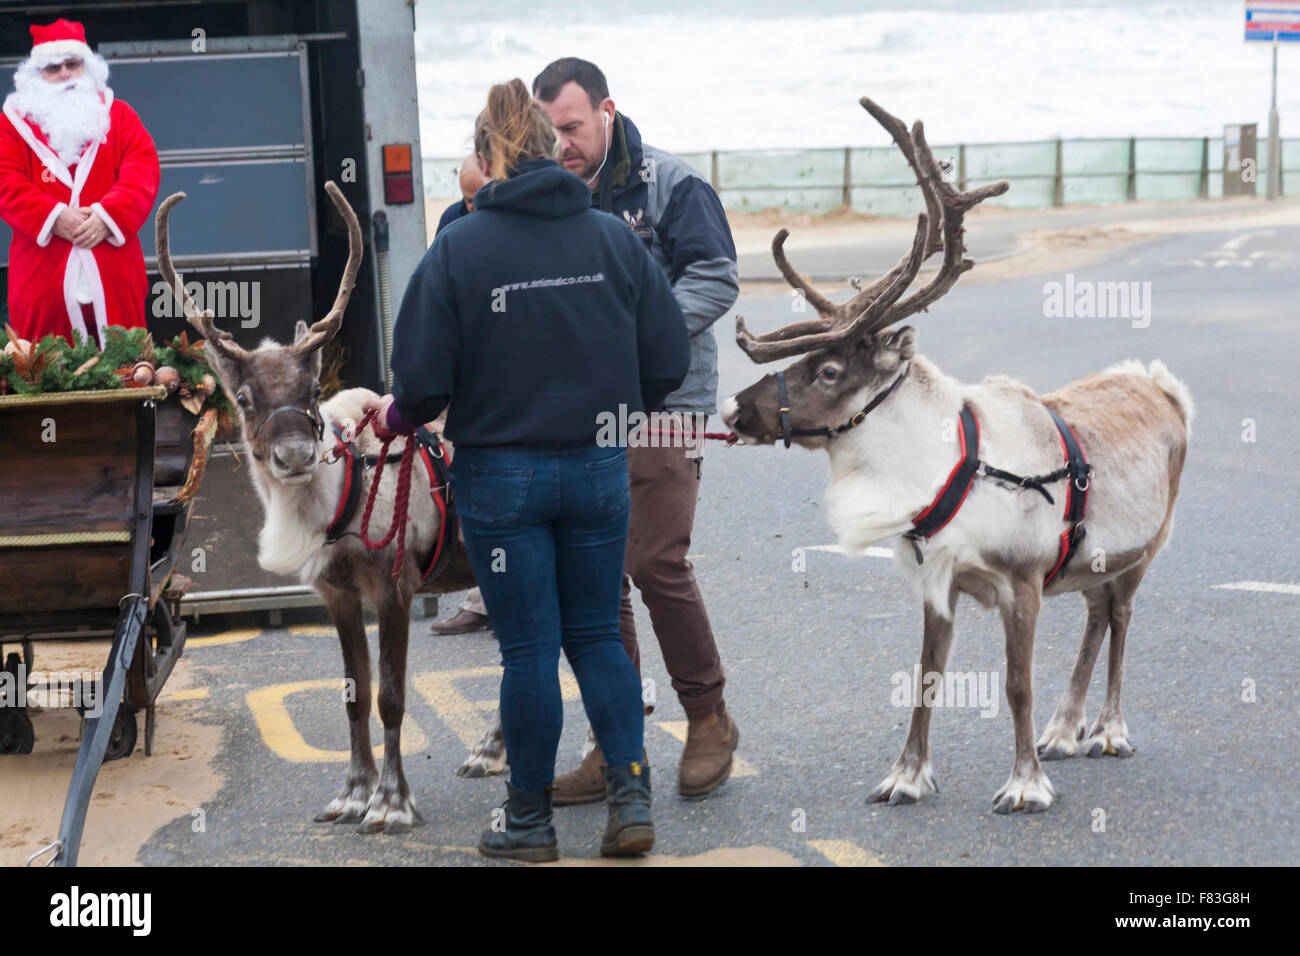 real santa and his reindeer